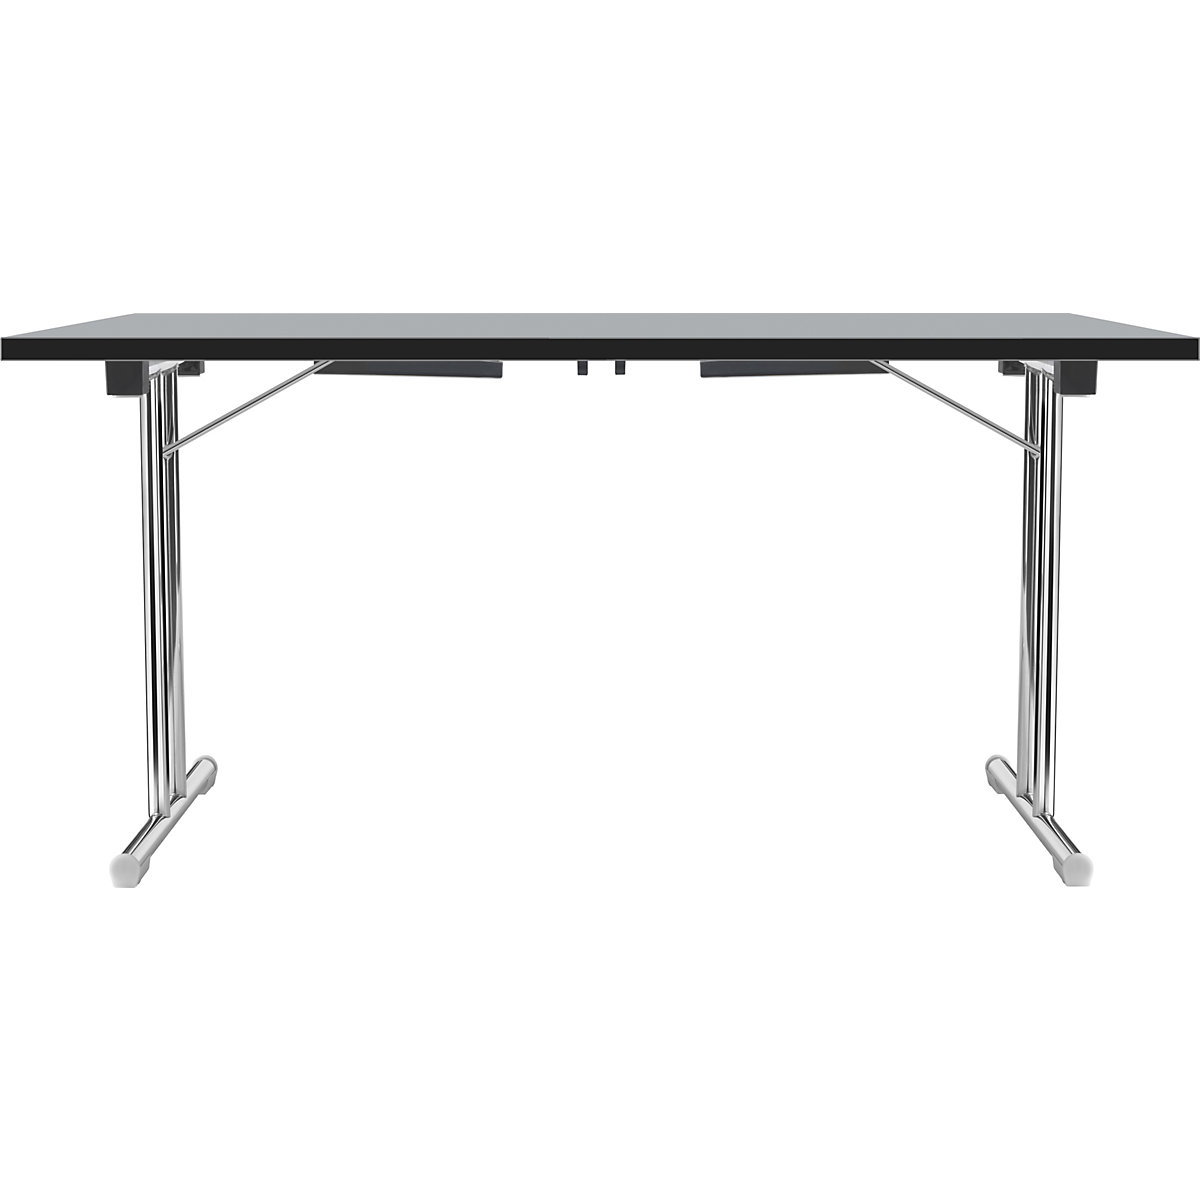 Zložljiva miza z dvojnim podnožjem v obliki črke T, ogrodje iz okrogle jeklene cevi, kromirano, svetlo siva/črna, ŠxG 1200 x 600 mm-5